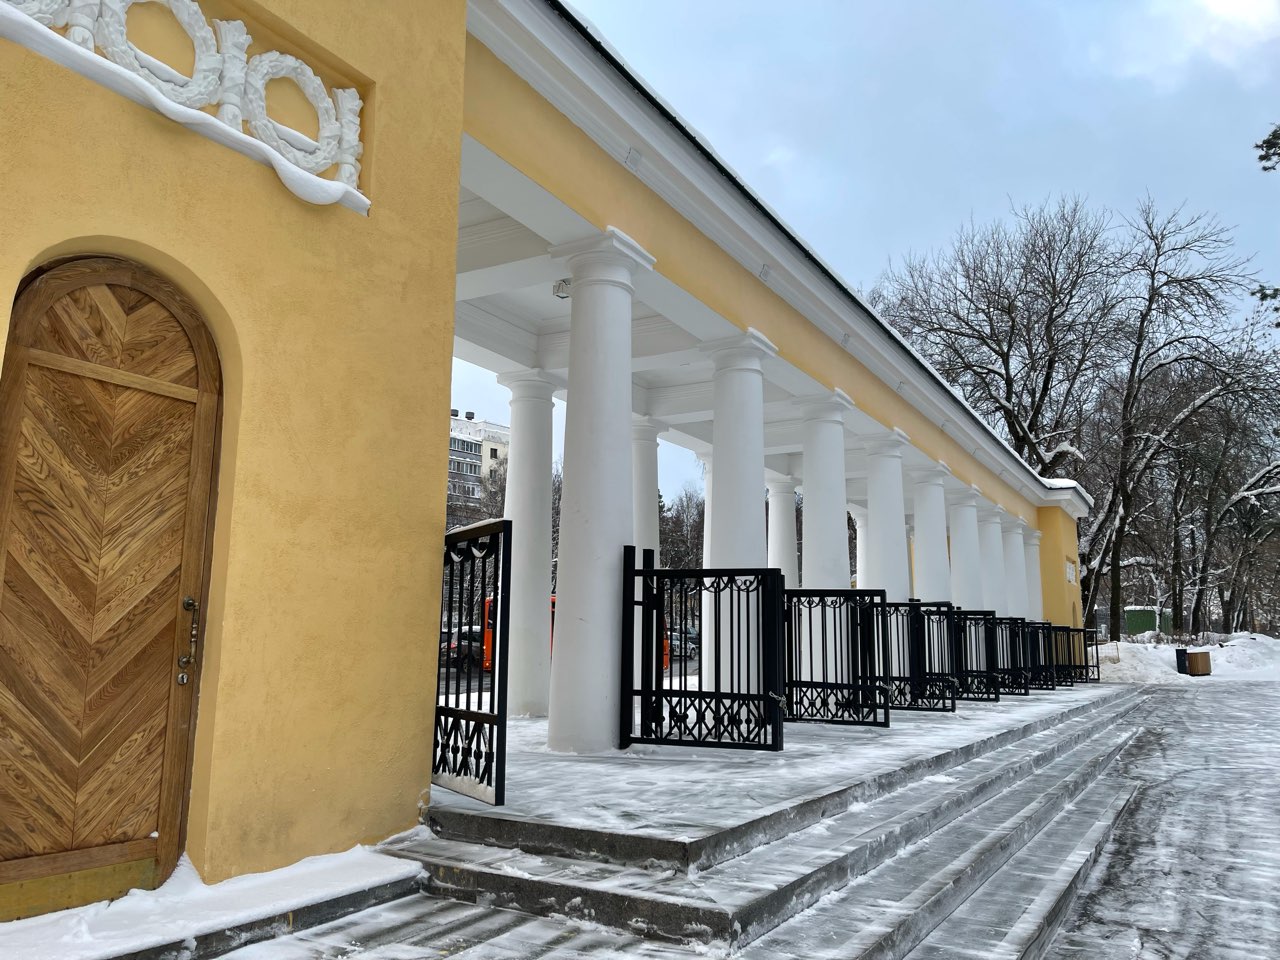 Мэрия Нижнего Новгород судится с исполнителем благоустройства парка «Швейцария» из-за недоделок